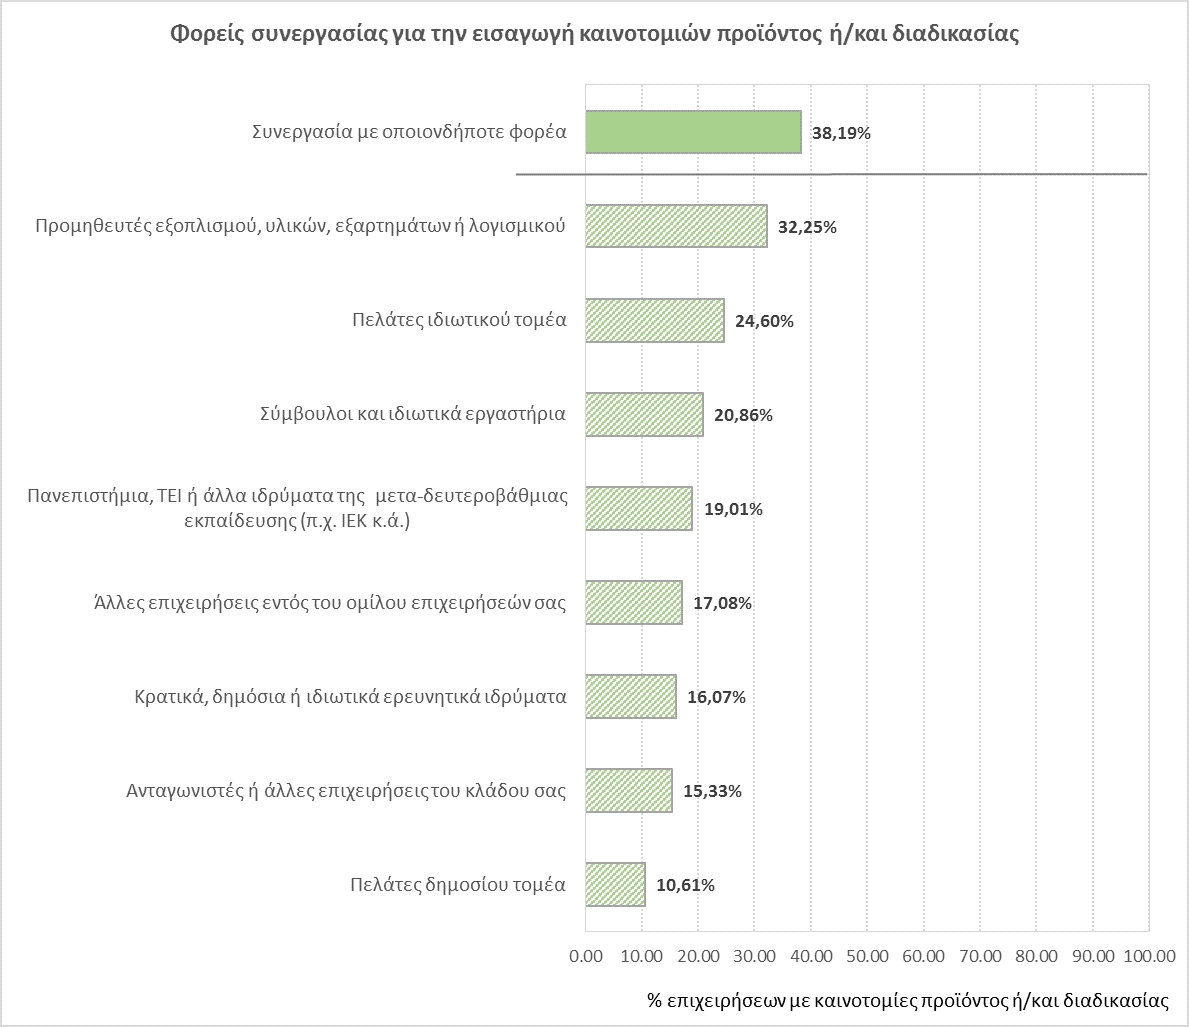 H καινοτομία στις ελληνικές επιχειρήσεις την τριετία 2010-2012